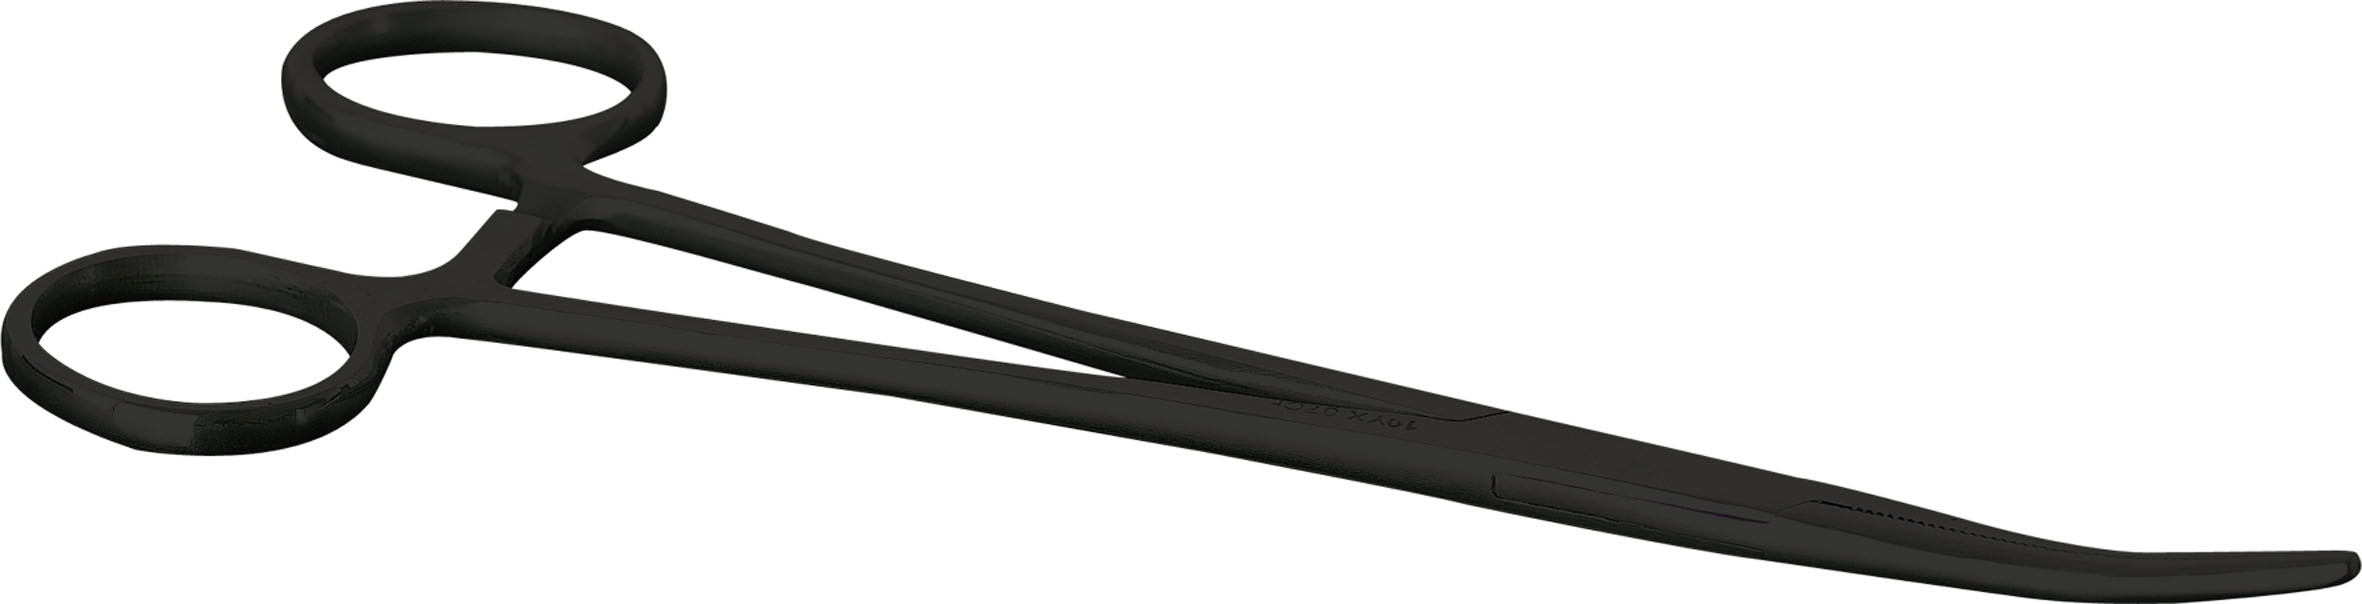 Saenger Pean tmavý - zahnutý, 14cm-9700614